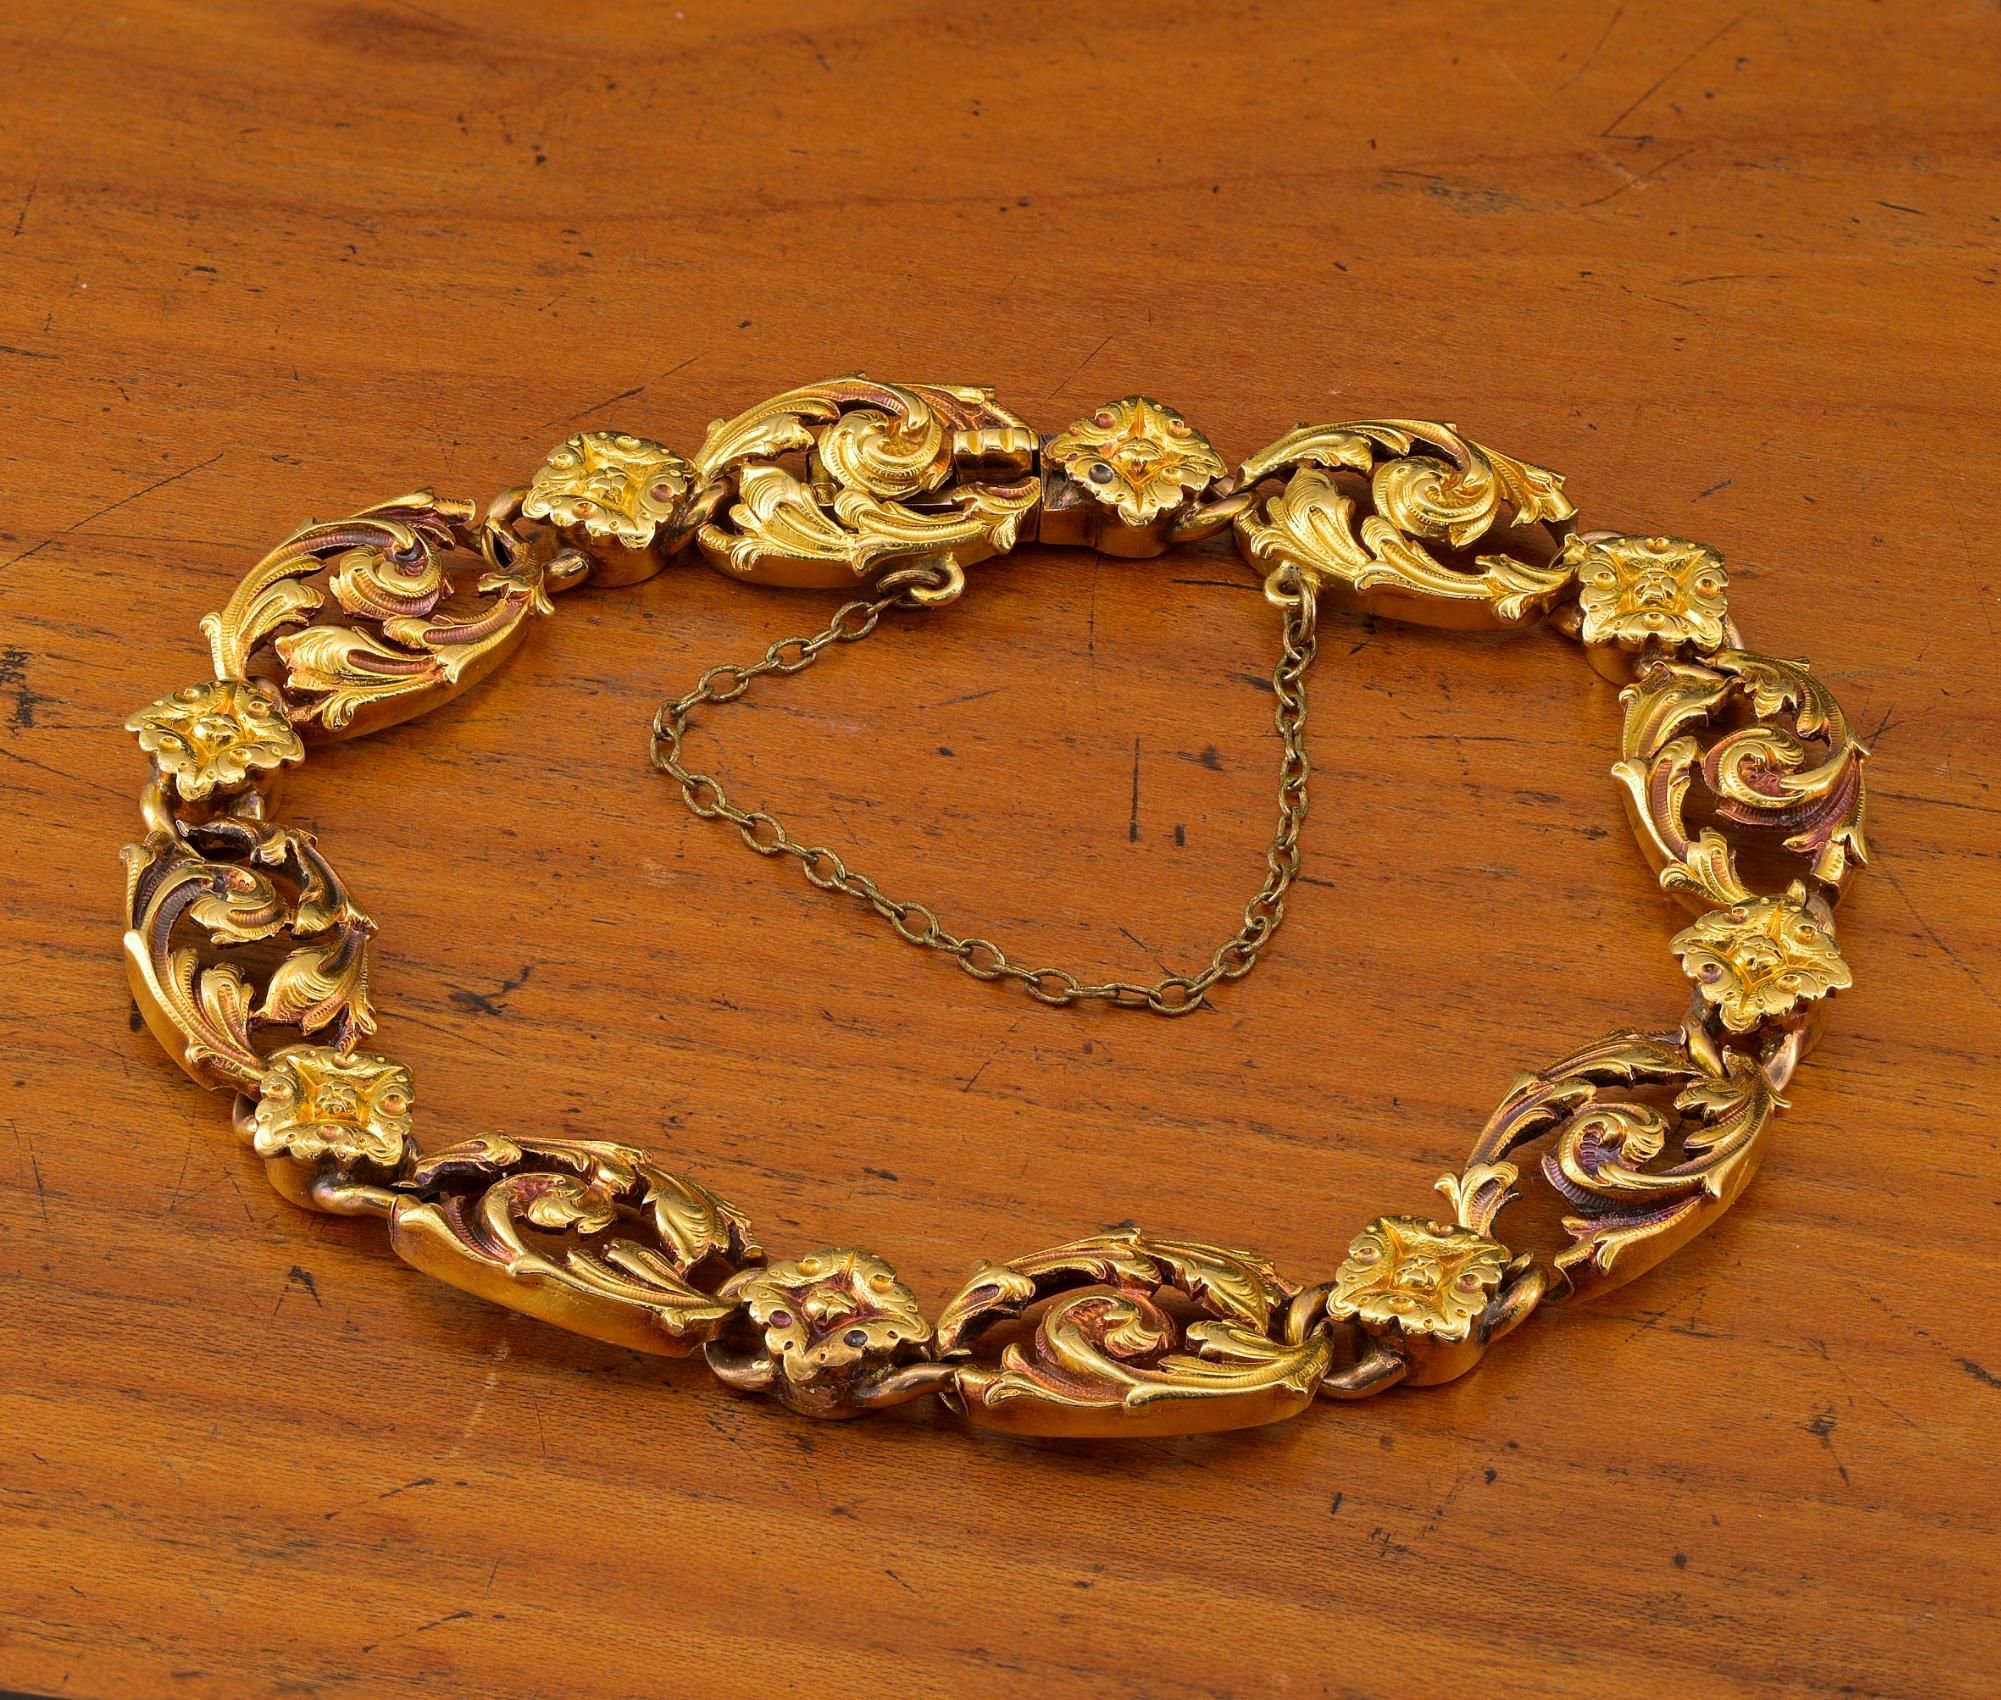 Superbe bracelet Art Nouveau en or massif 18 Kt, 1895 env.
Poinçons français
Les bijoux Art Nouveau (